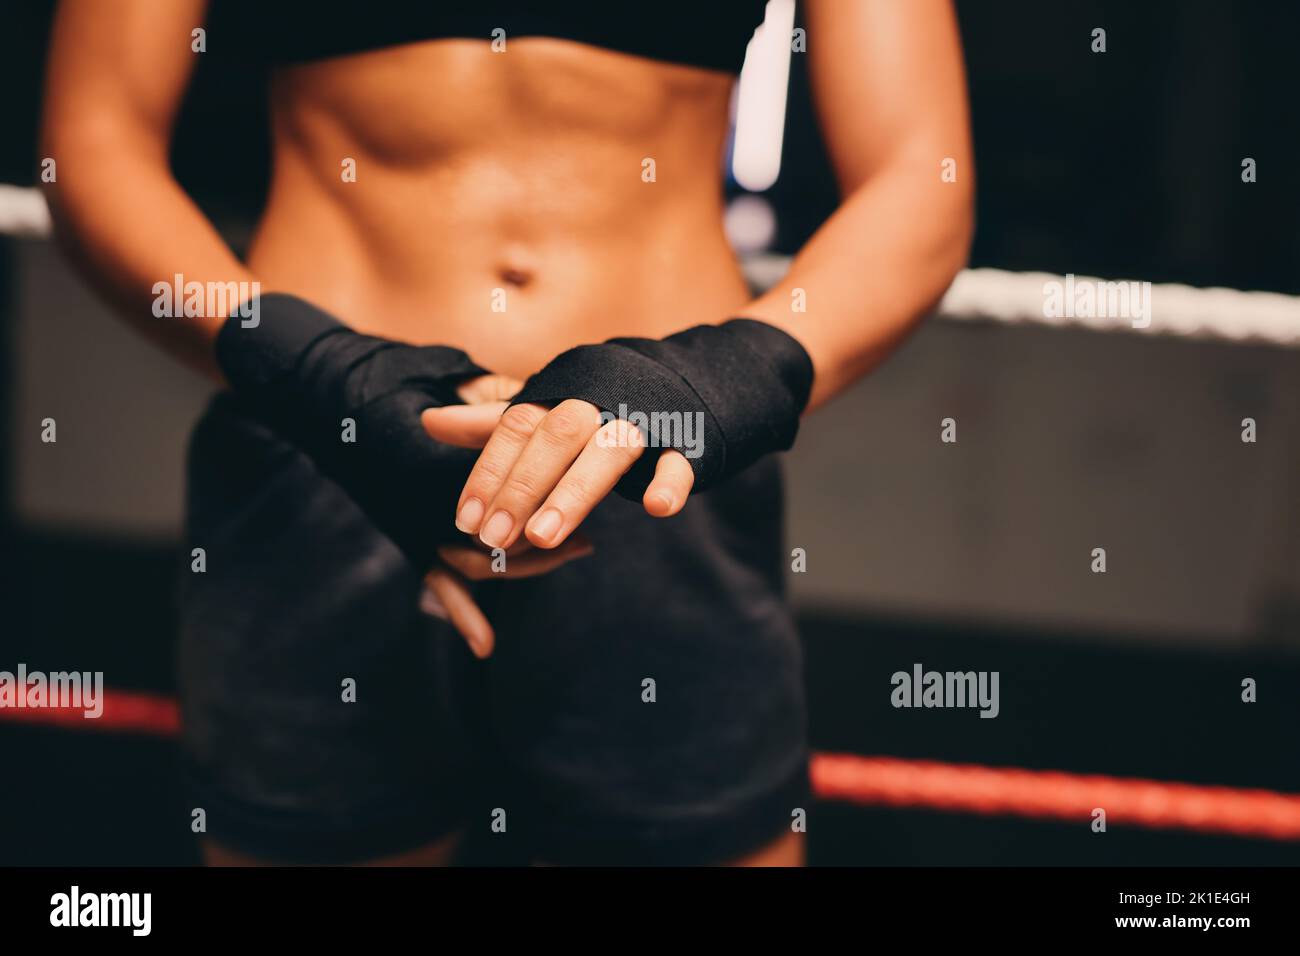 Boxer femenino envolver sus manos mientras está de pie en un ring de boxeo. Mujer joven atlética preparándose para una sesión de entrenamiento de boxeo en un gimnasio de fitness. Foto de stock